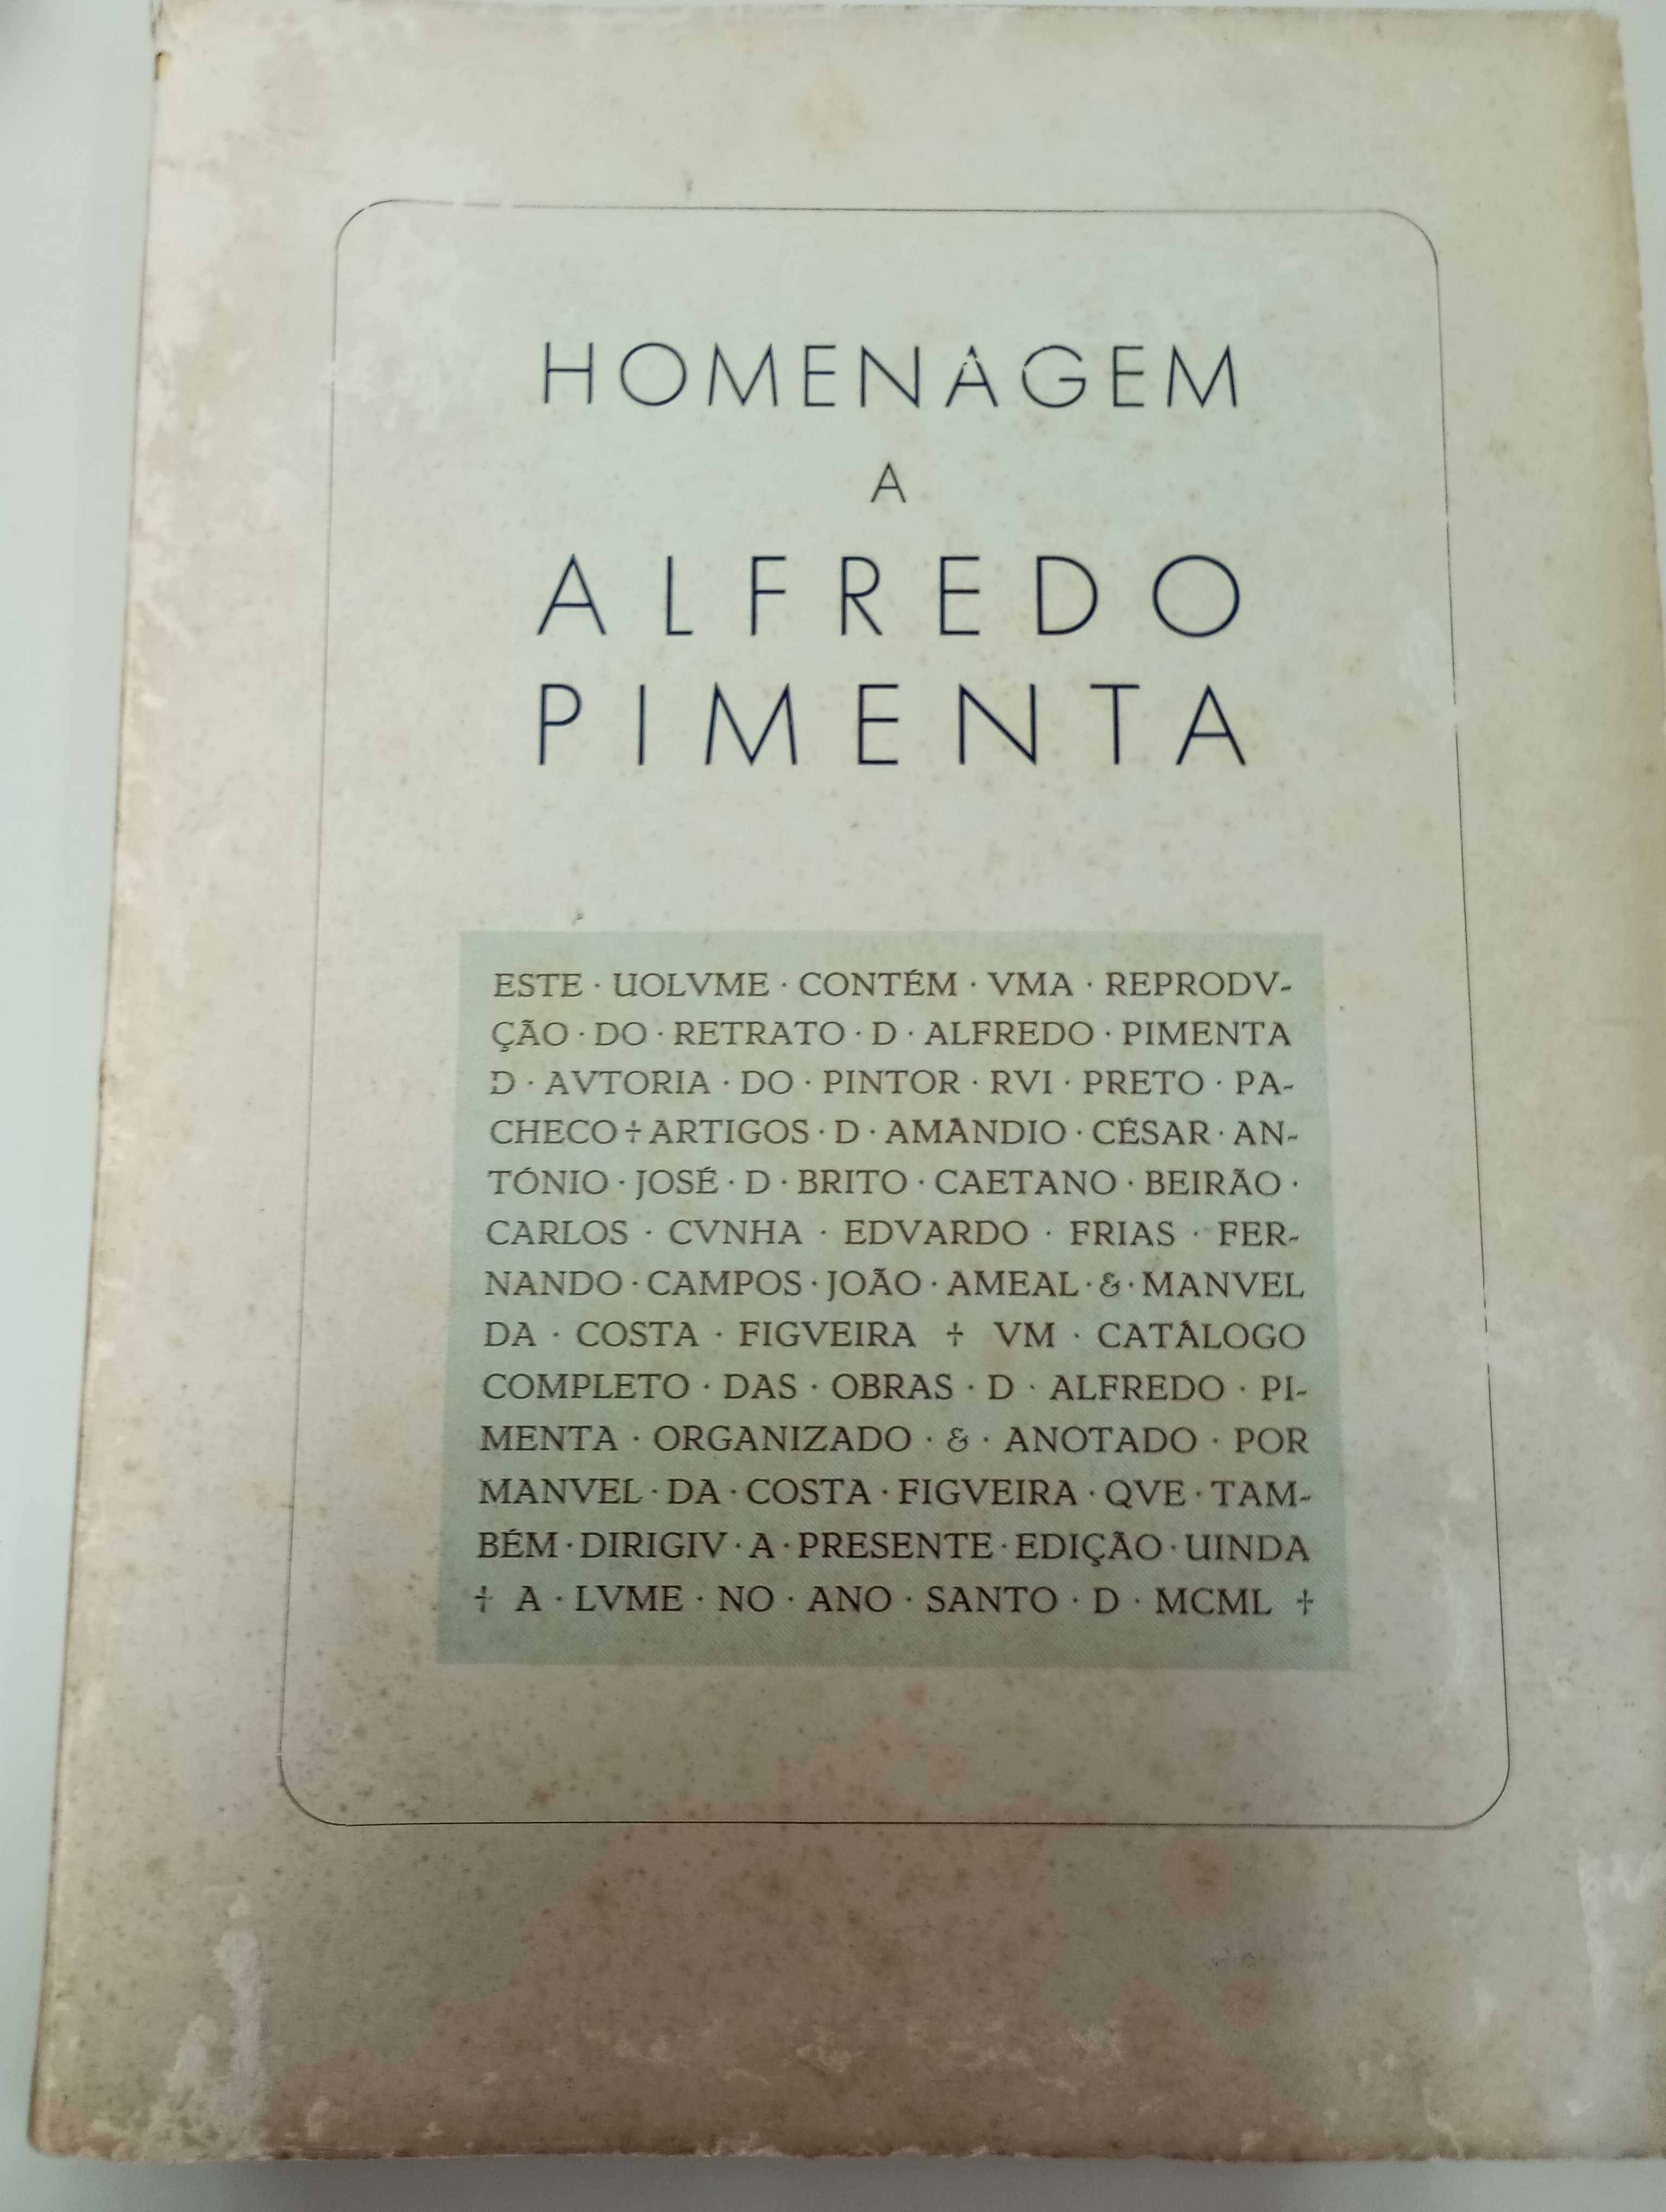 "Homenagem a Alfredo Pimenta", pensador monárquico.